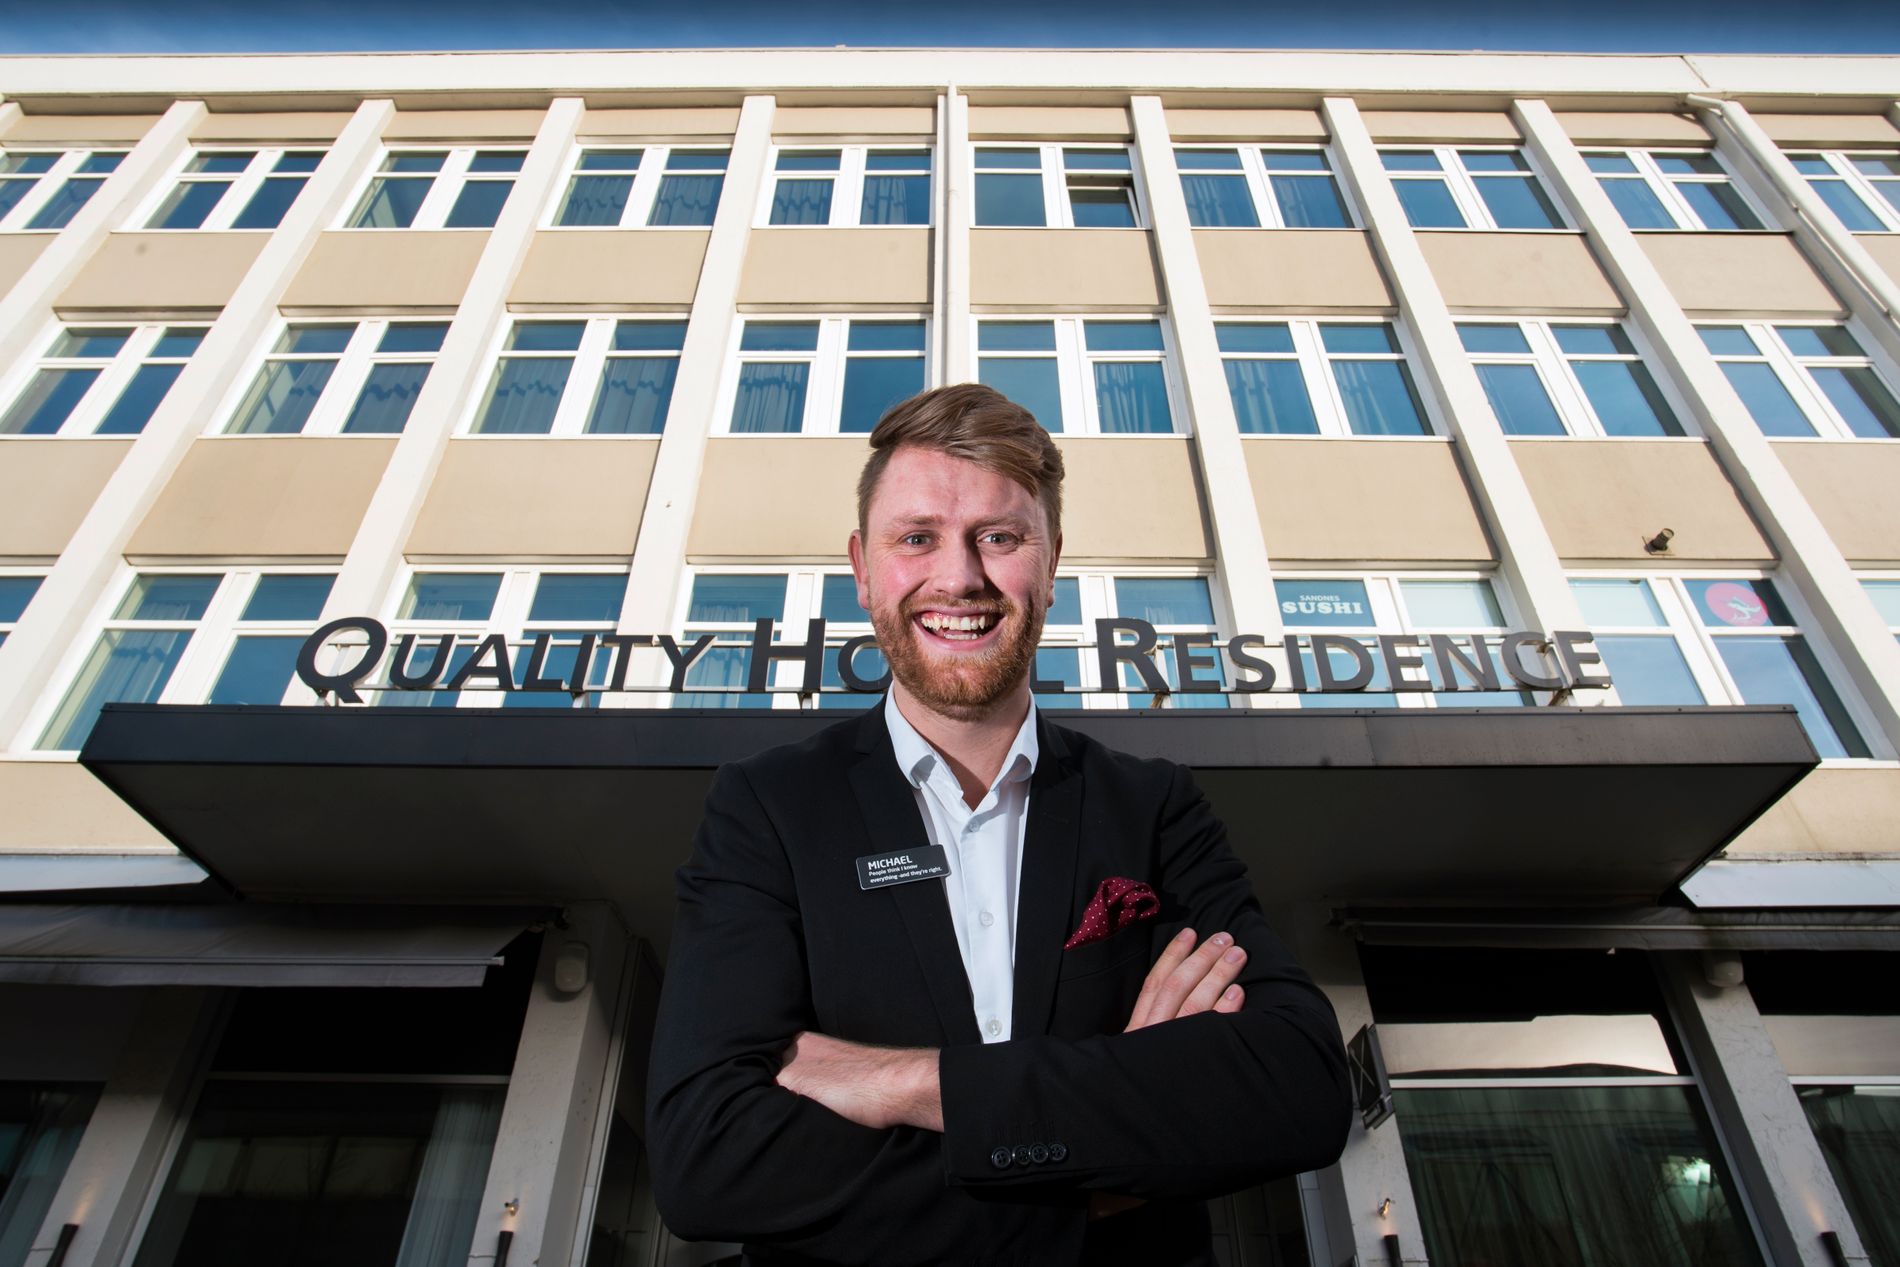  Michael Holm har klatret raskt i gradene. Nå er 26-åringen hotelldirektør ved Quality Hotel Residence i Sandnes. 